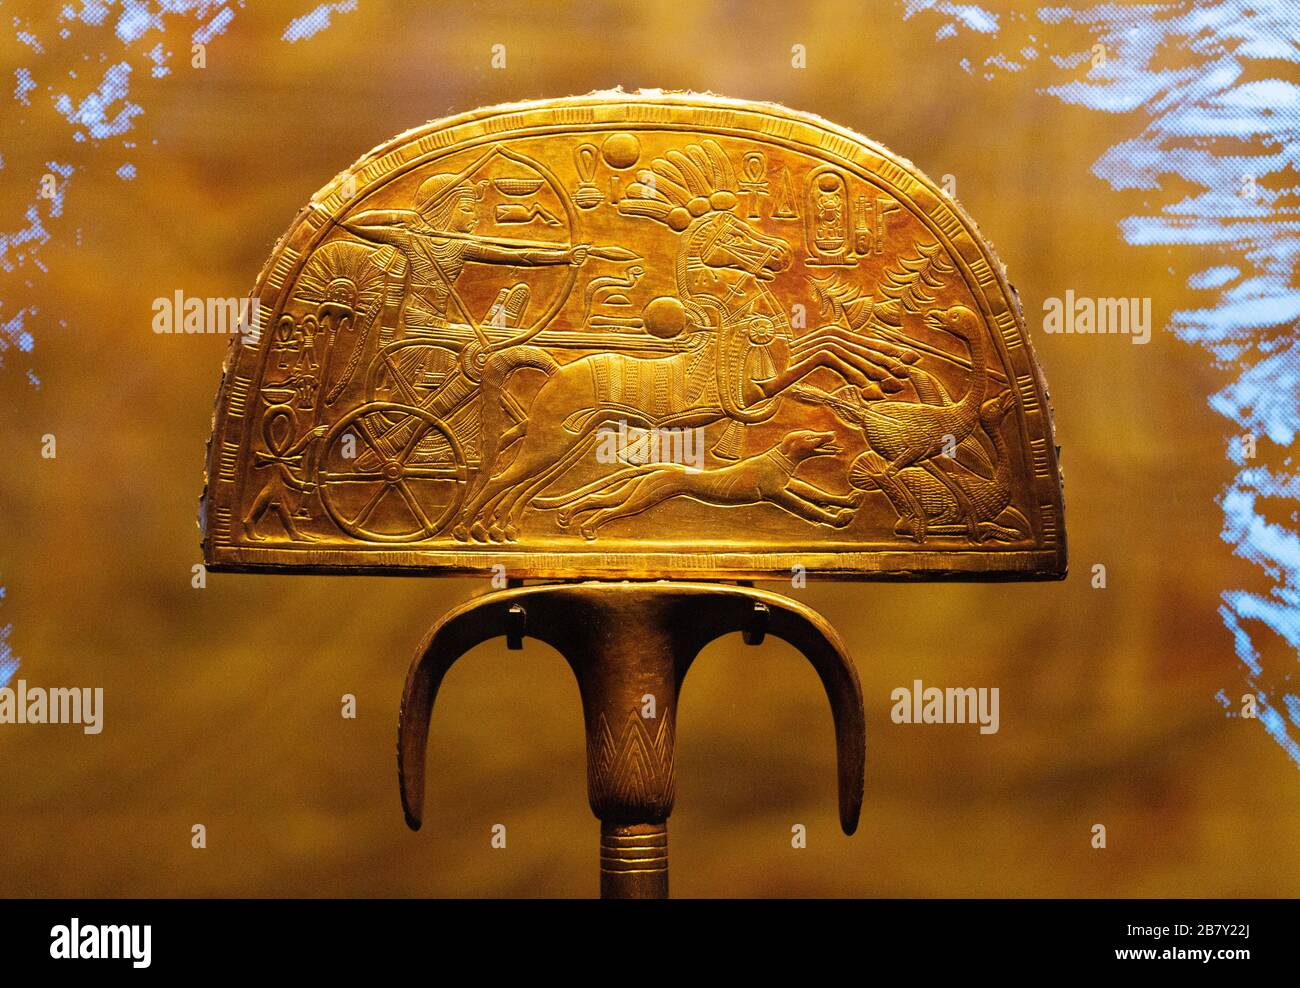 Les trésors de Toutankhamun de la tombe de Toutankhaben; le ventilateur de chasse à l'autruche en bois doré; exposition historique de l'histoire égyptienne ancienne Banque D'Images